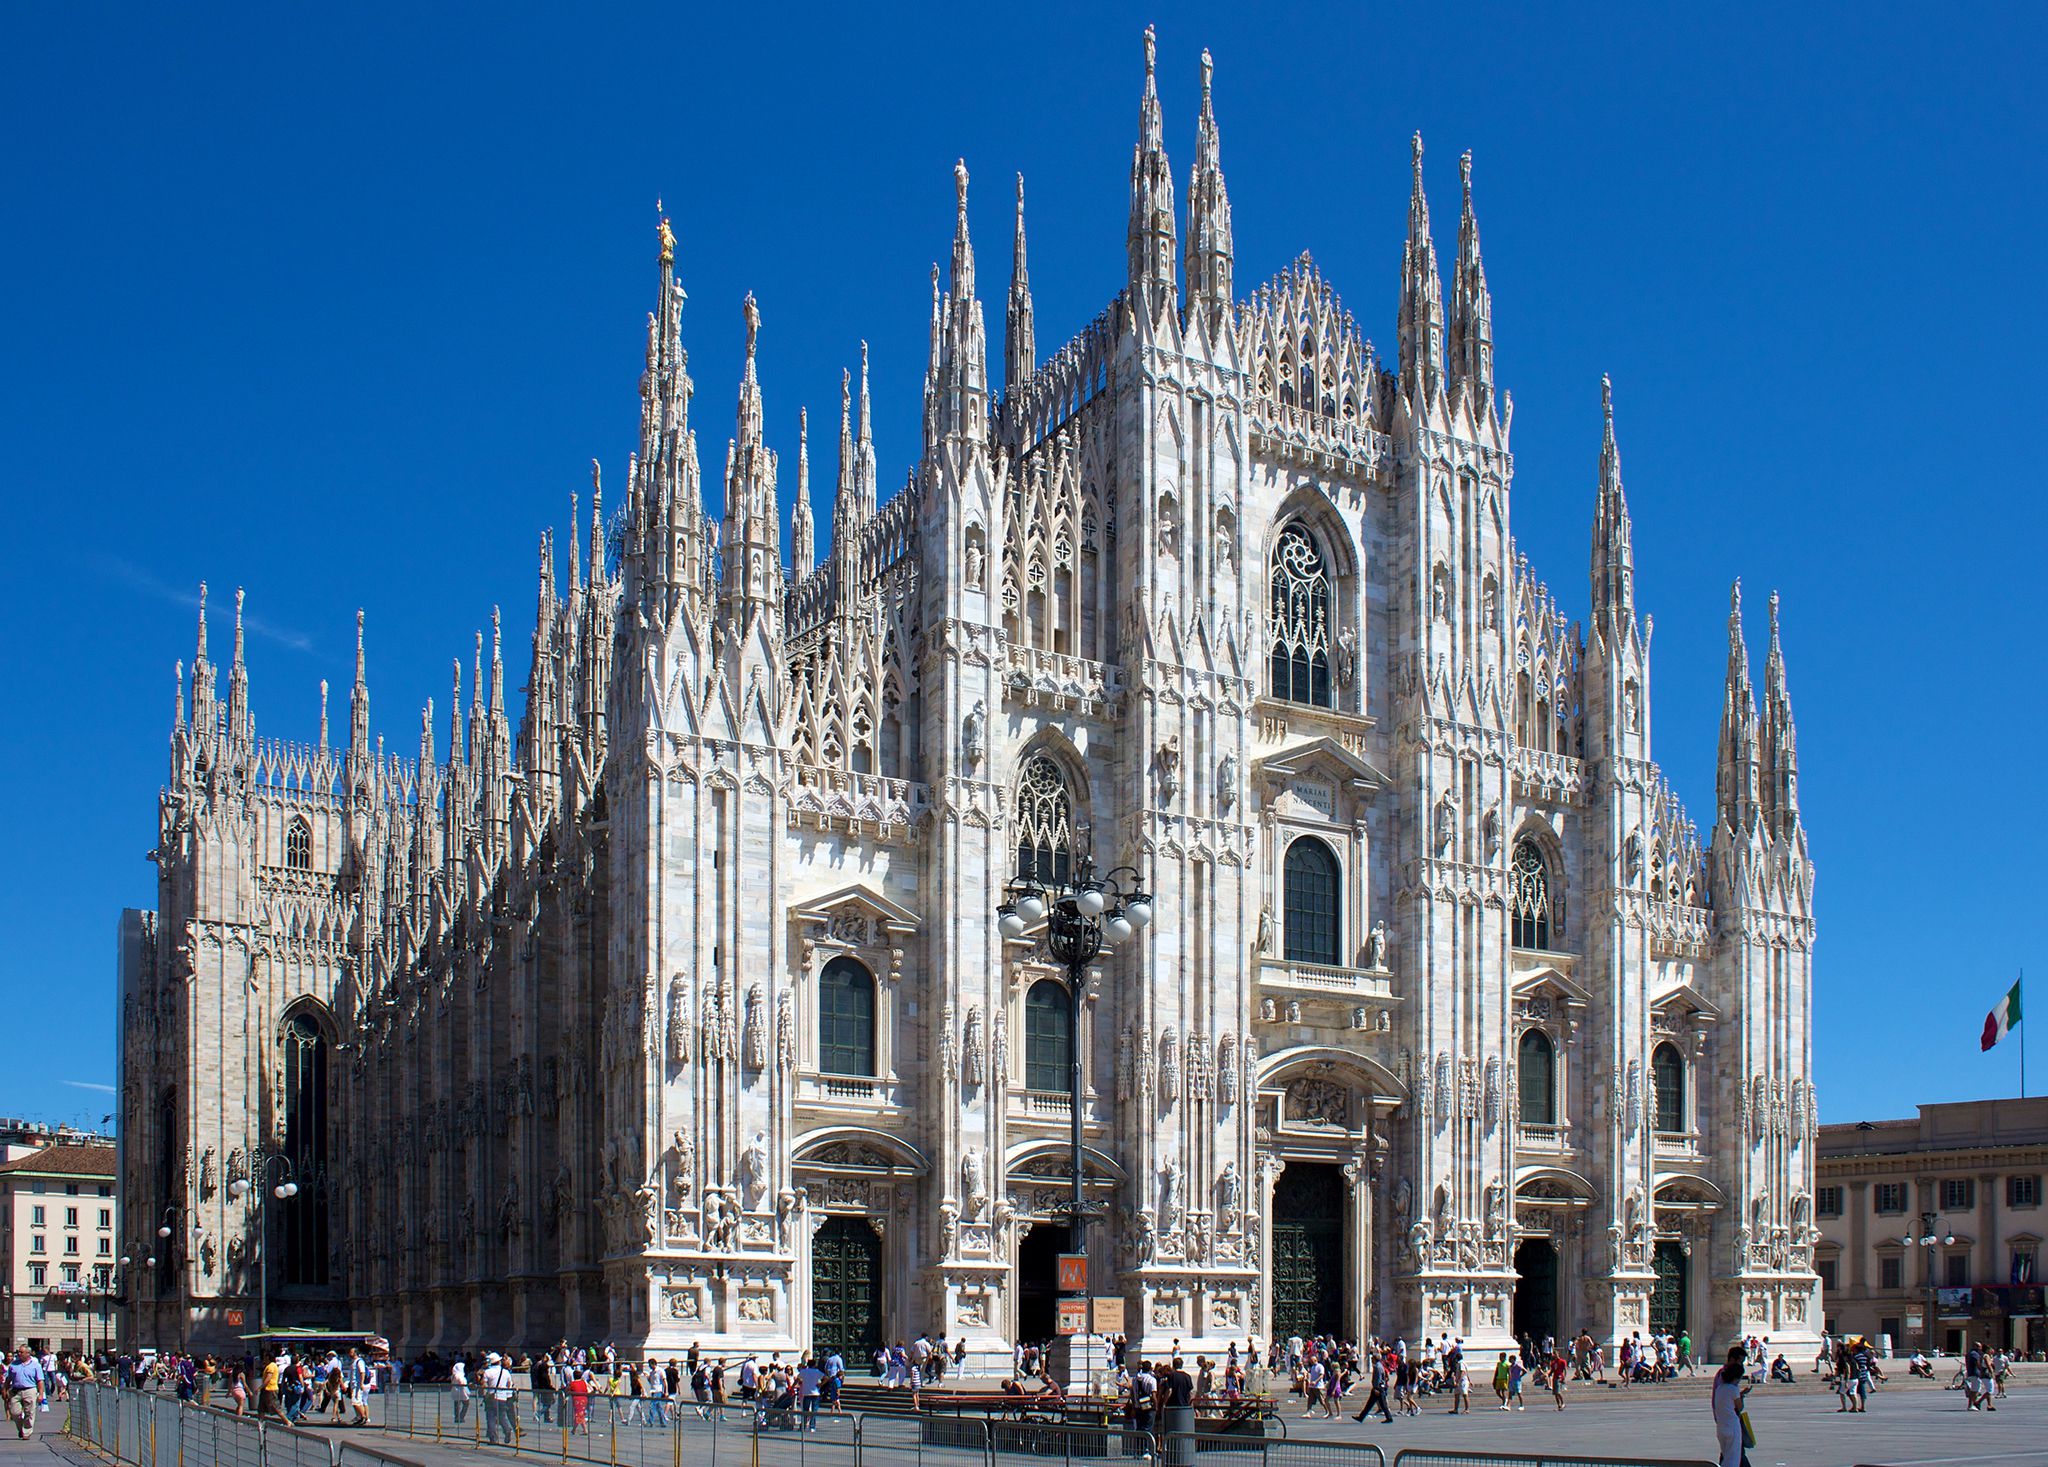 Ντουόμο του Μιλάνου (Duomo di Milano) | TopTraveller.gr